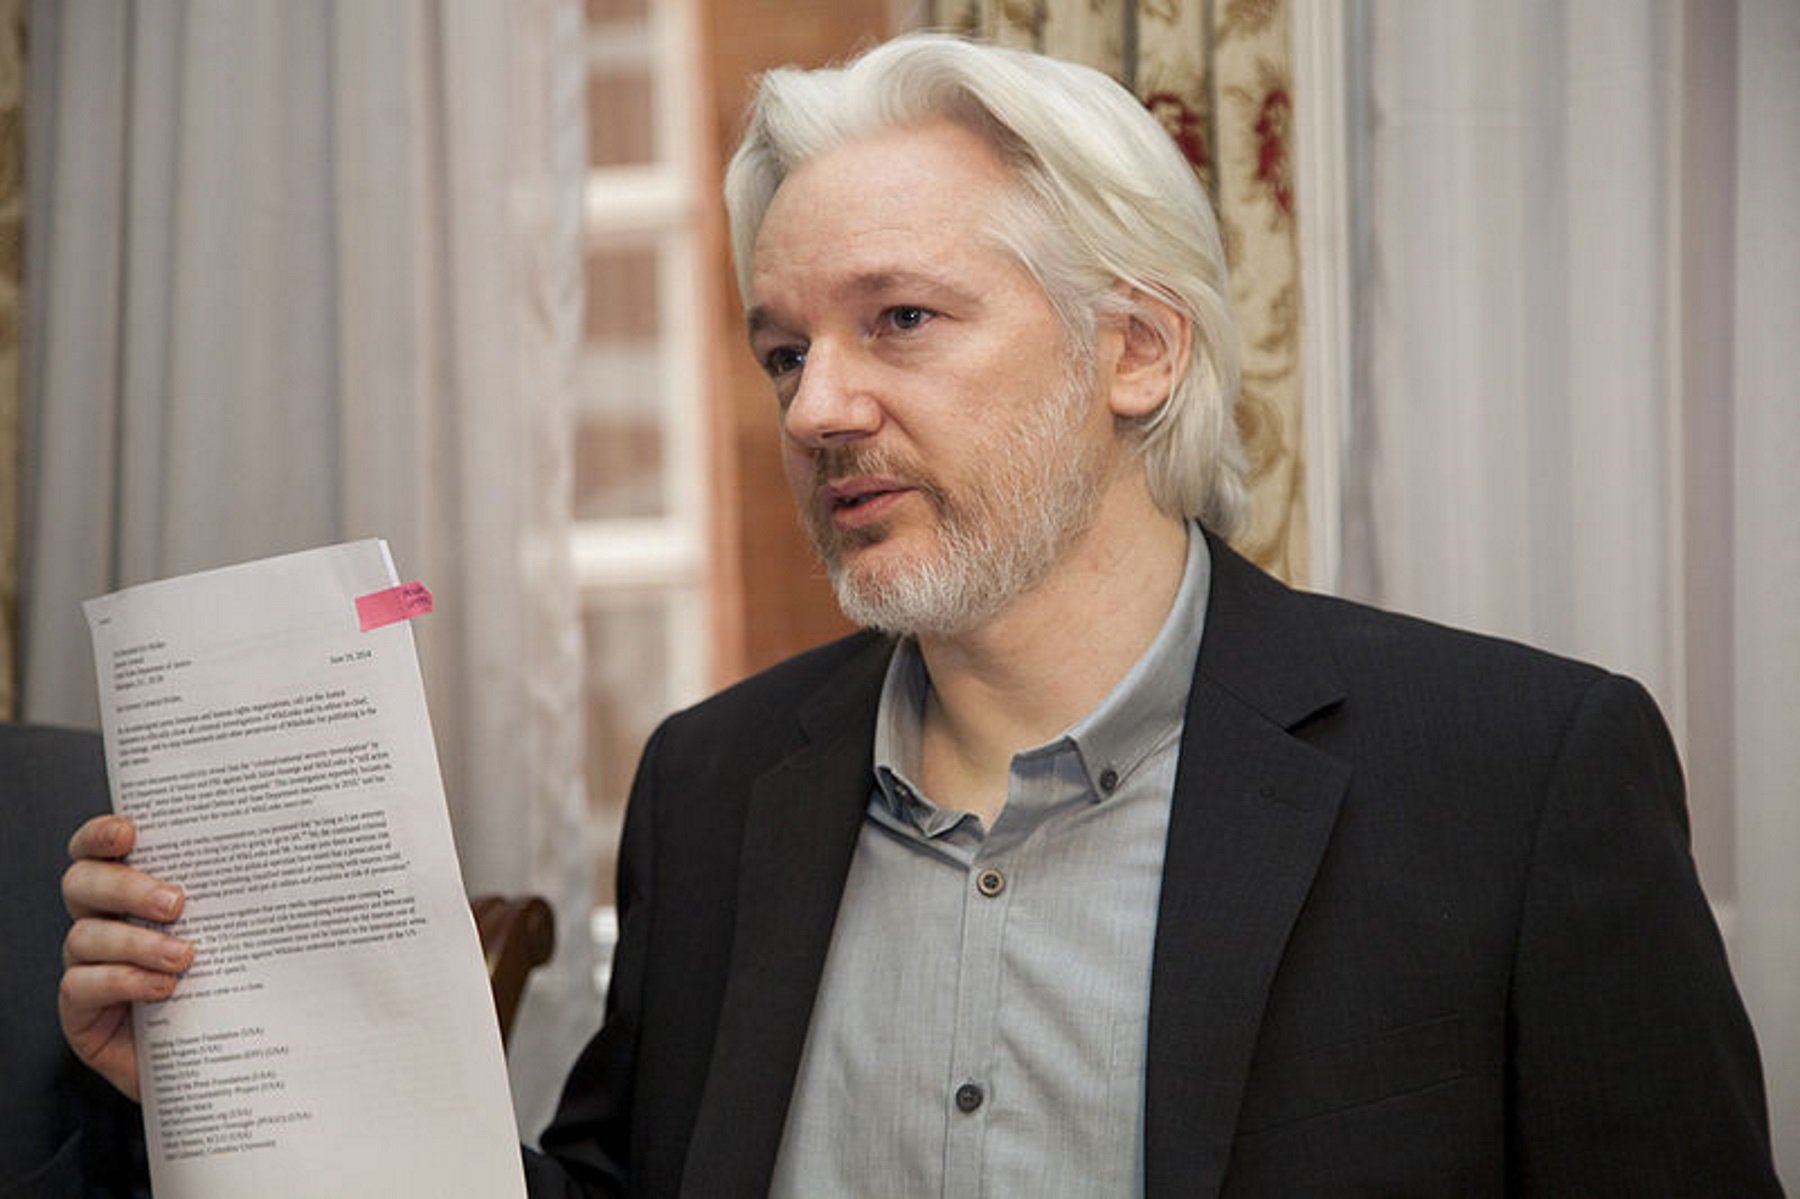 Julian Assange confon ‘El Mundo Today’ amb ‘El Mundo’ i s’empassa una broma